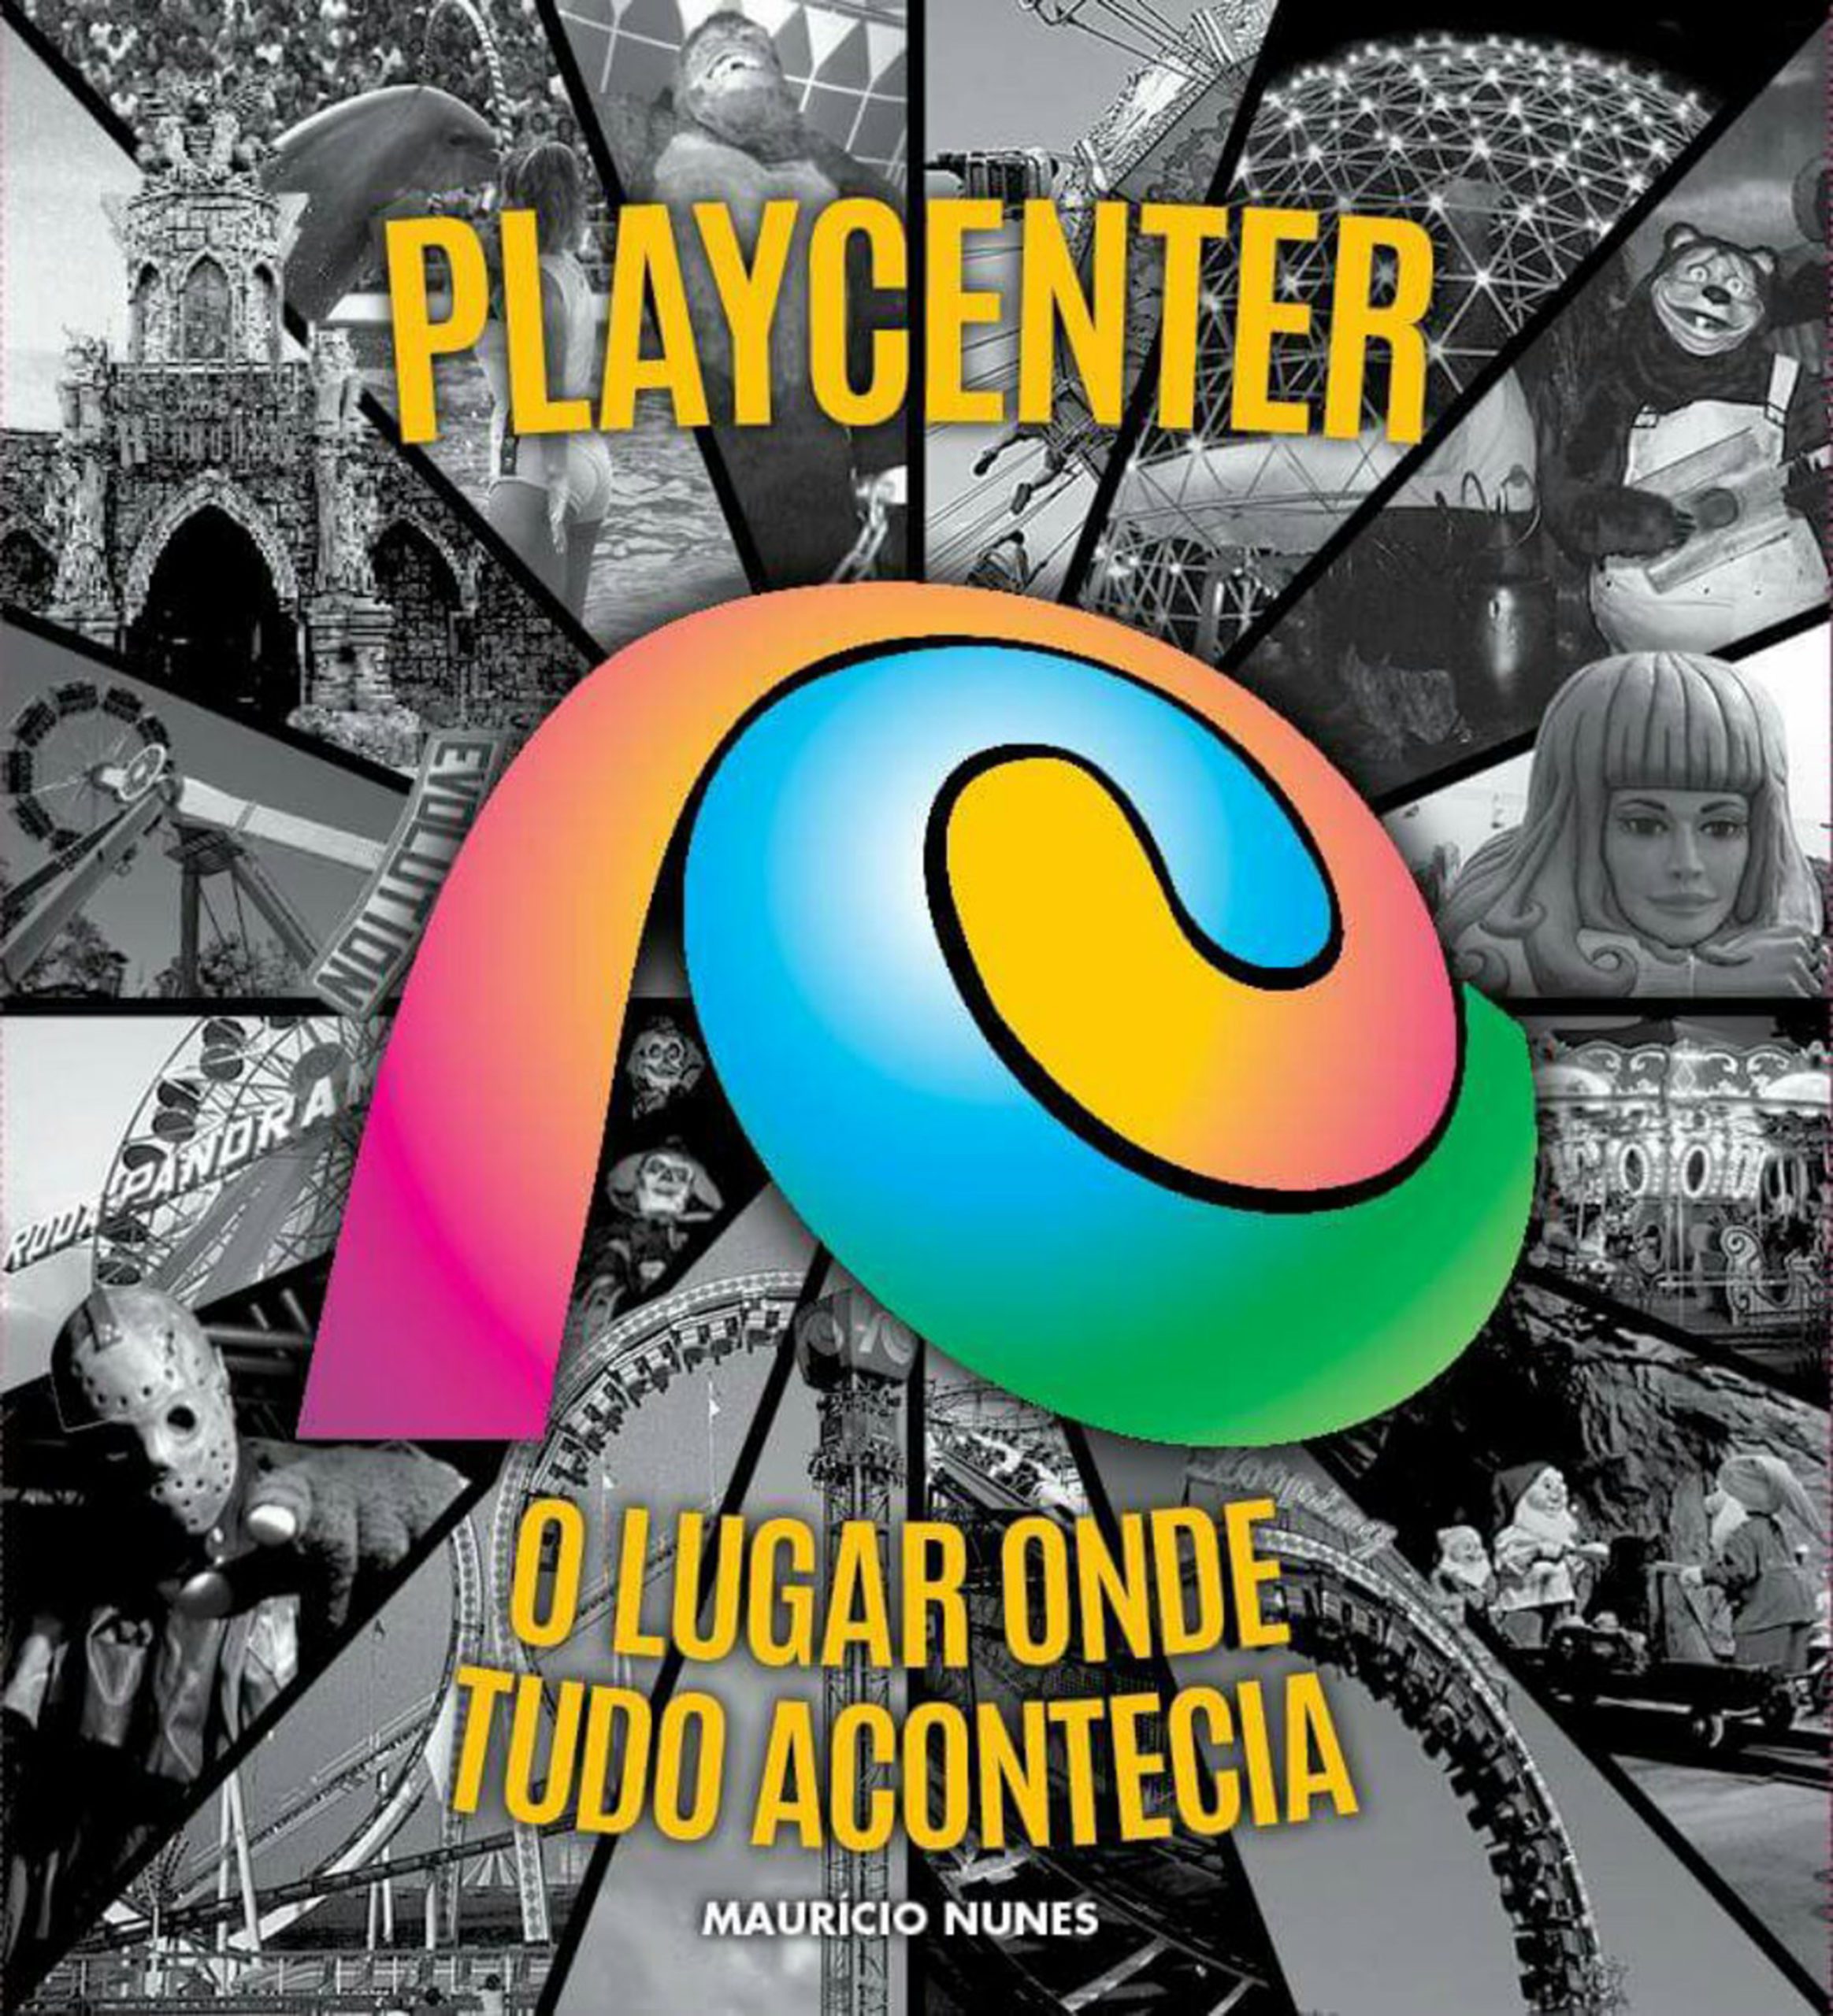 Rota Cult: Nova edição do livro “Playcenter – O lugar onde tudo acontecia” será reimpressa